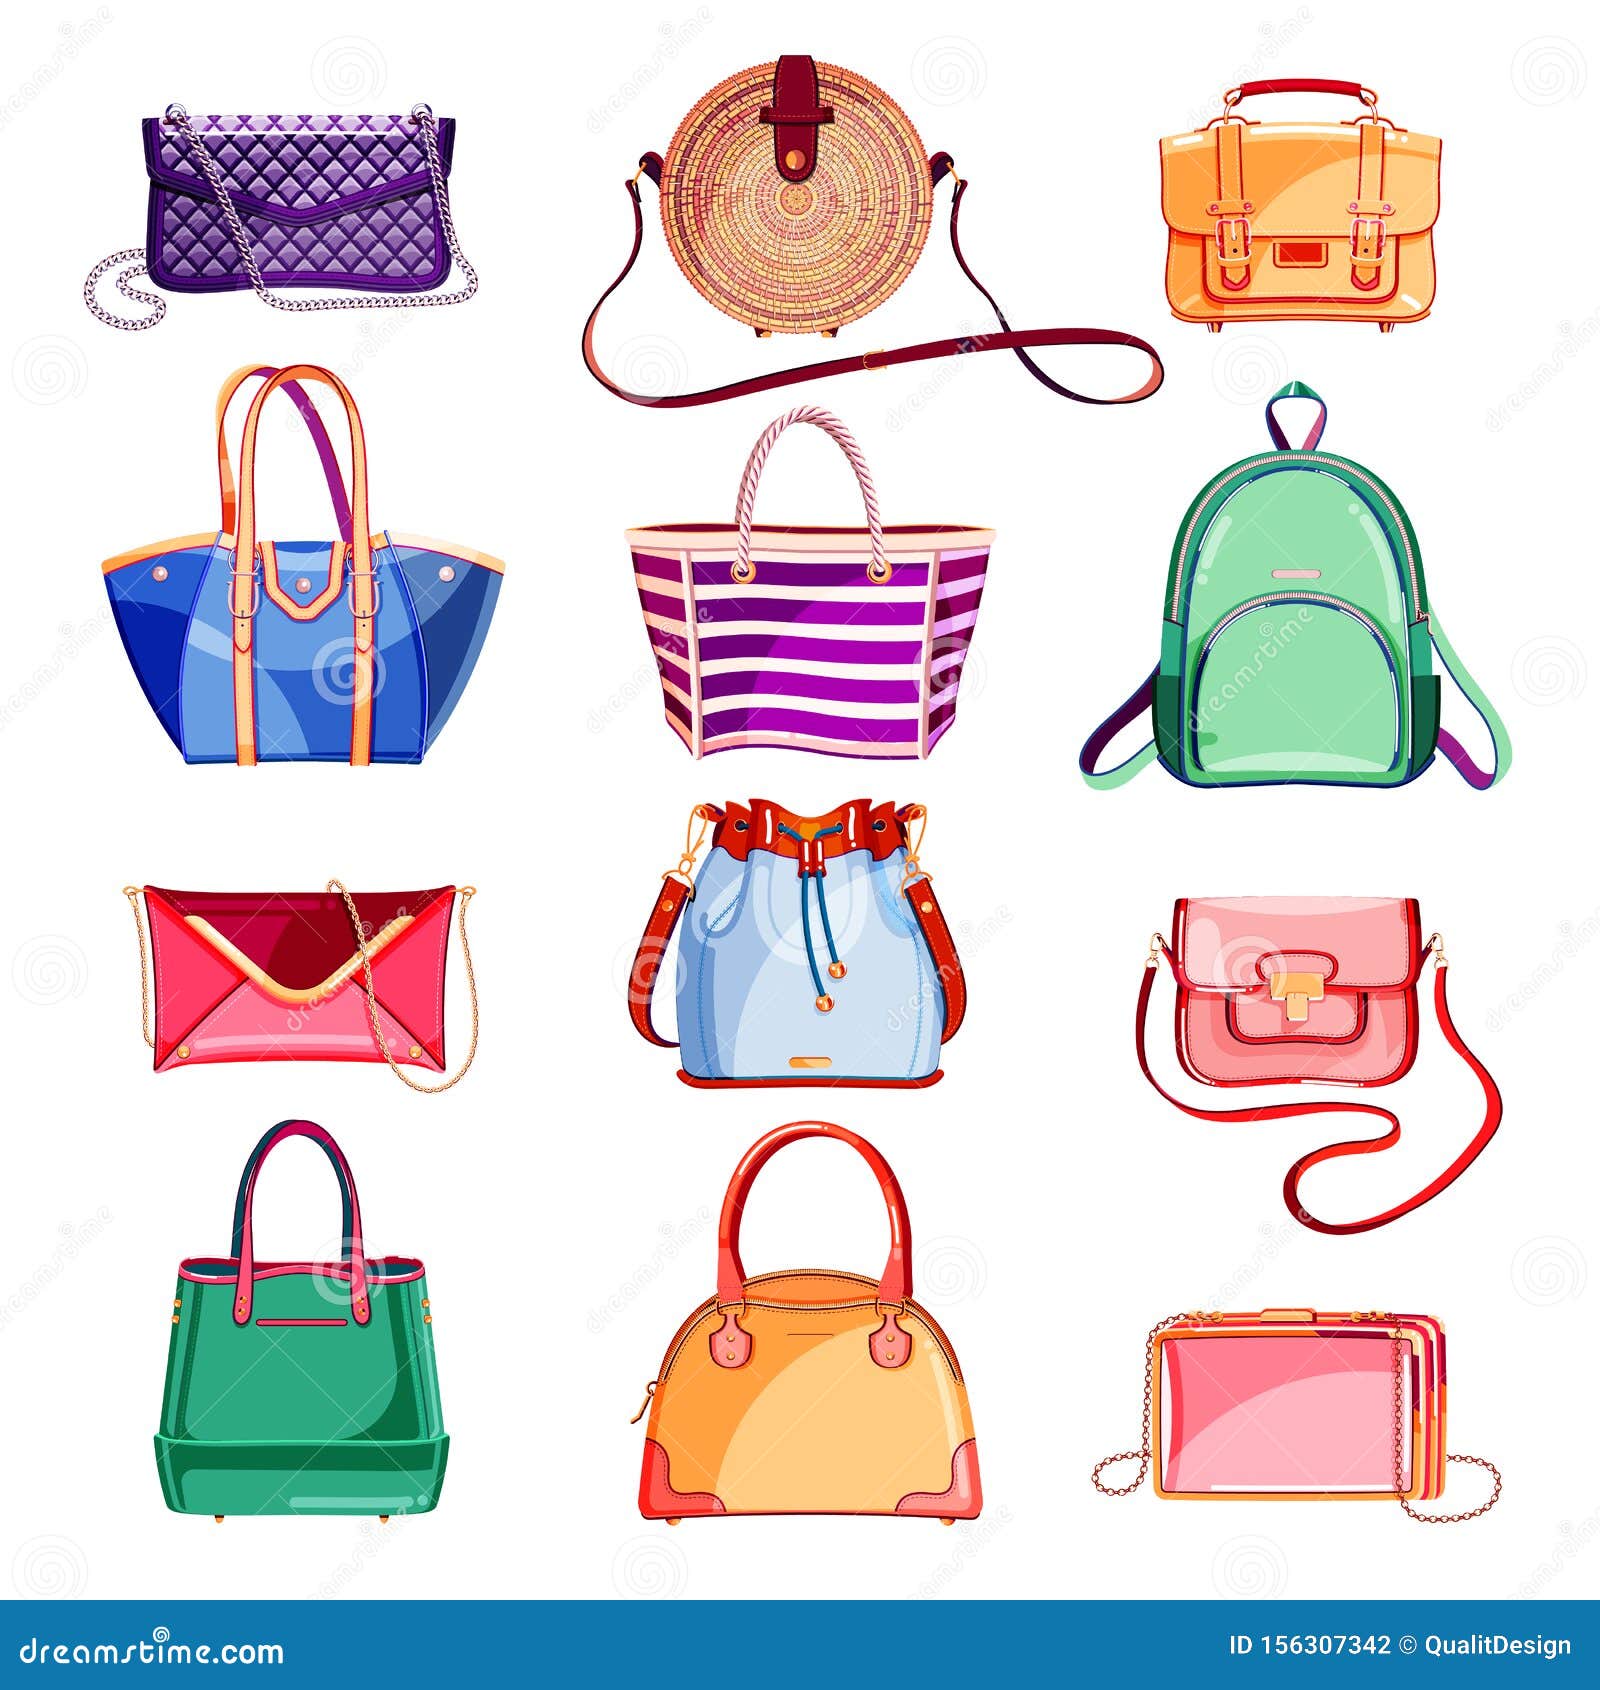 Handbag styles | Fashion handbags, Vintage handbags, Bags